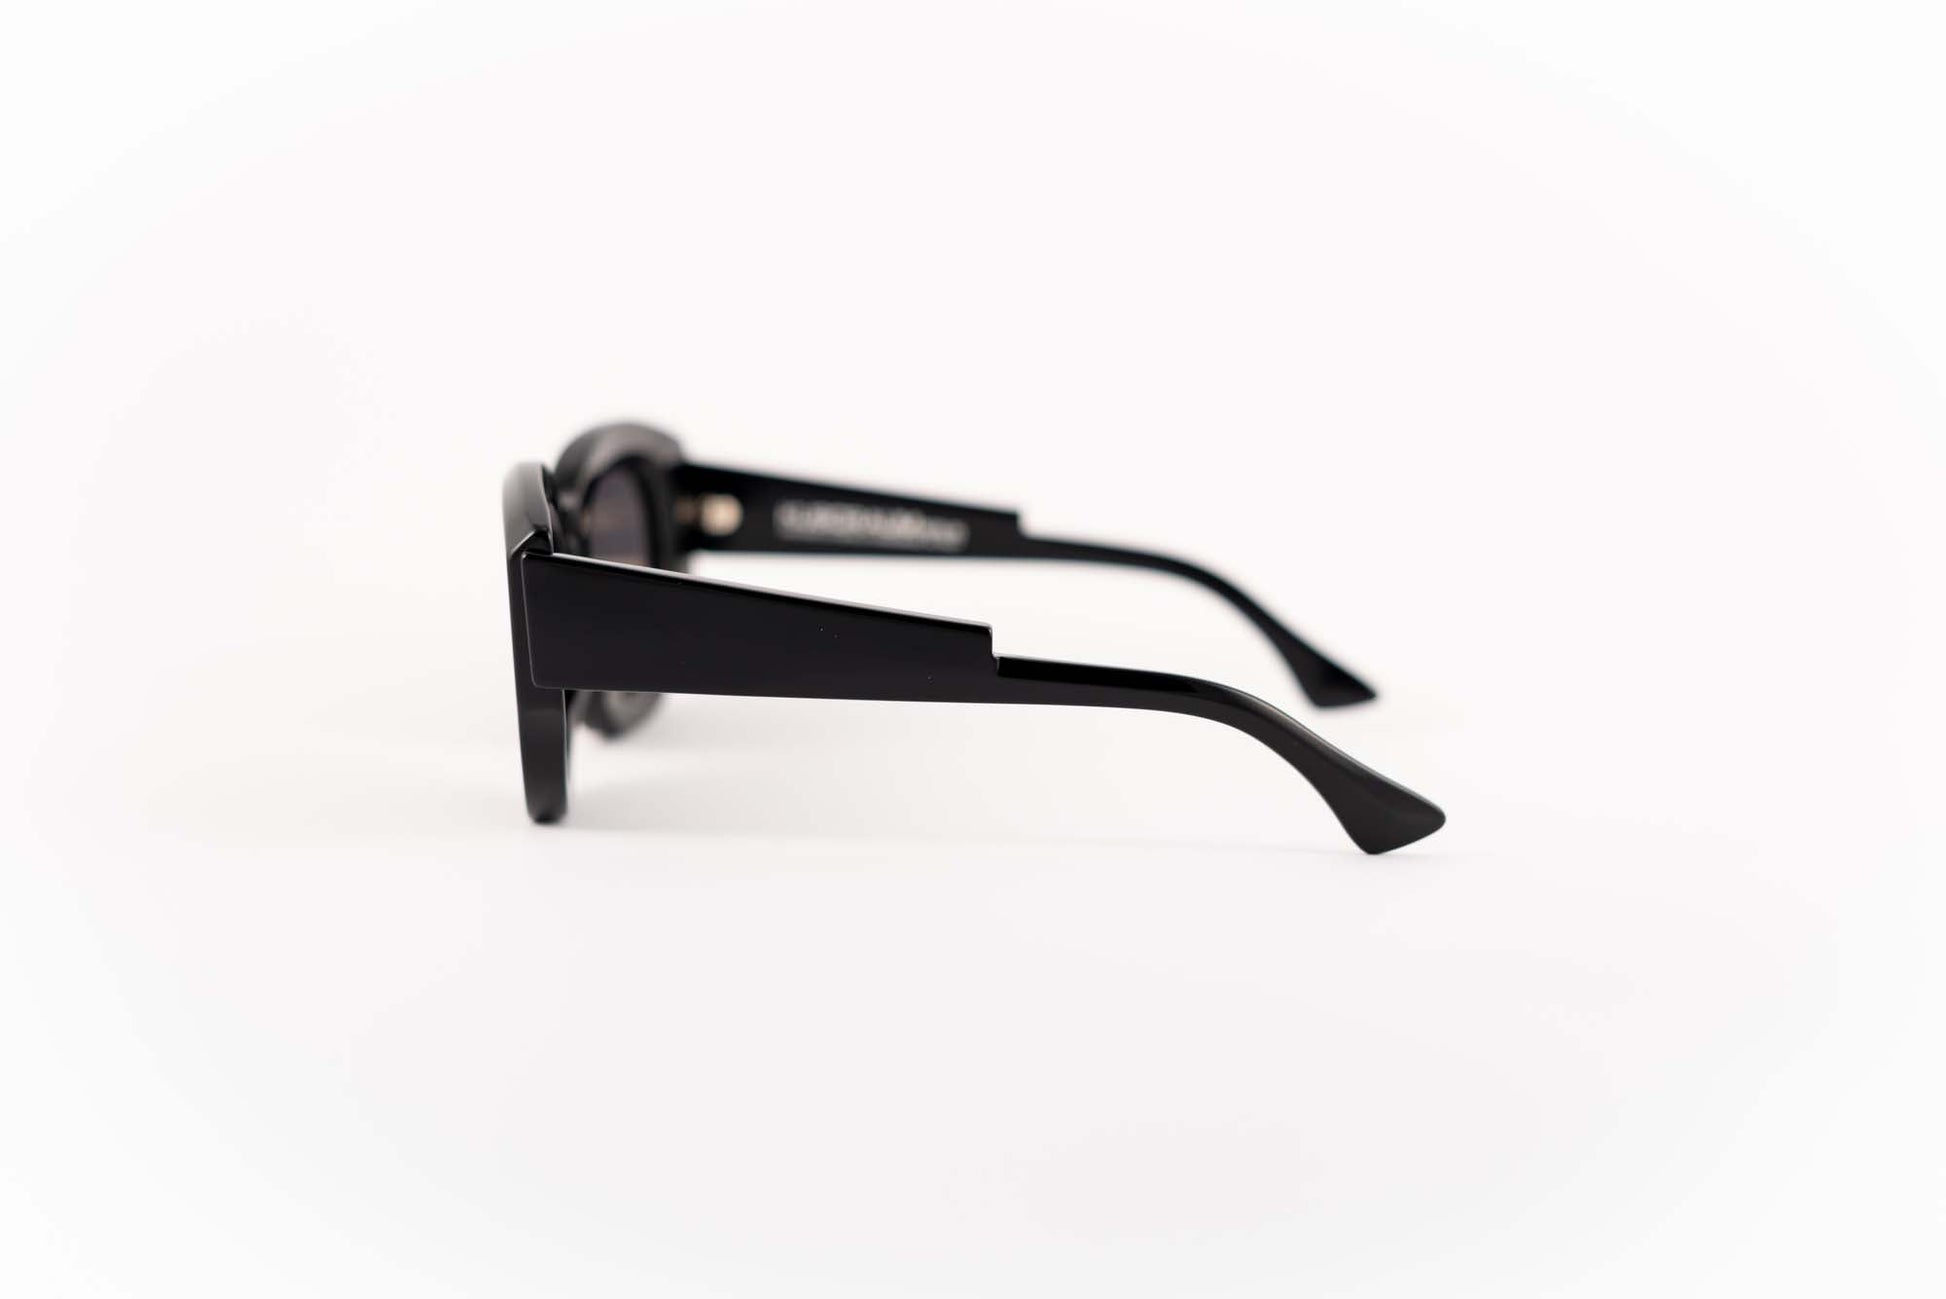 Kuboraum Occhiali da sole Nero / Acetato / Gatta Kuboraum Maske B2 BS: occhiale nero a farfalla oversize con lenti fumo